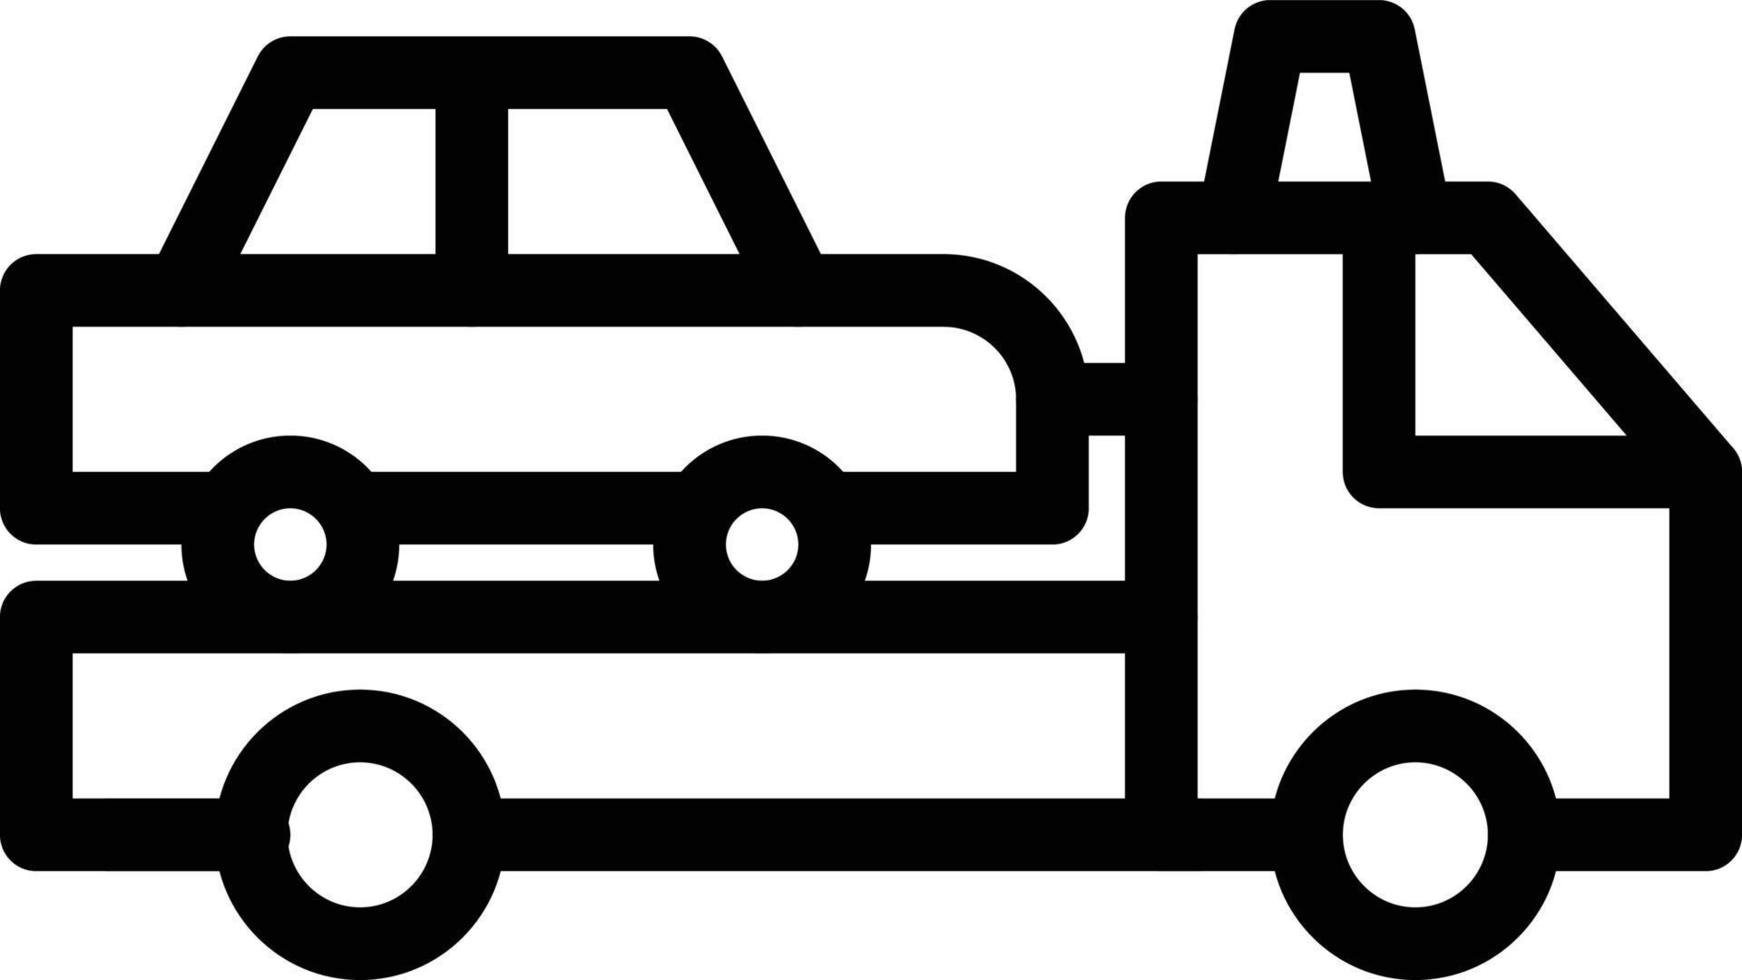 illustration vectorielle de voiture sur fond.symboles de qualité premium.icônes vectorielles pour le concept et la conception graphique. vecteur